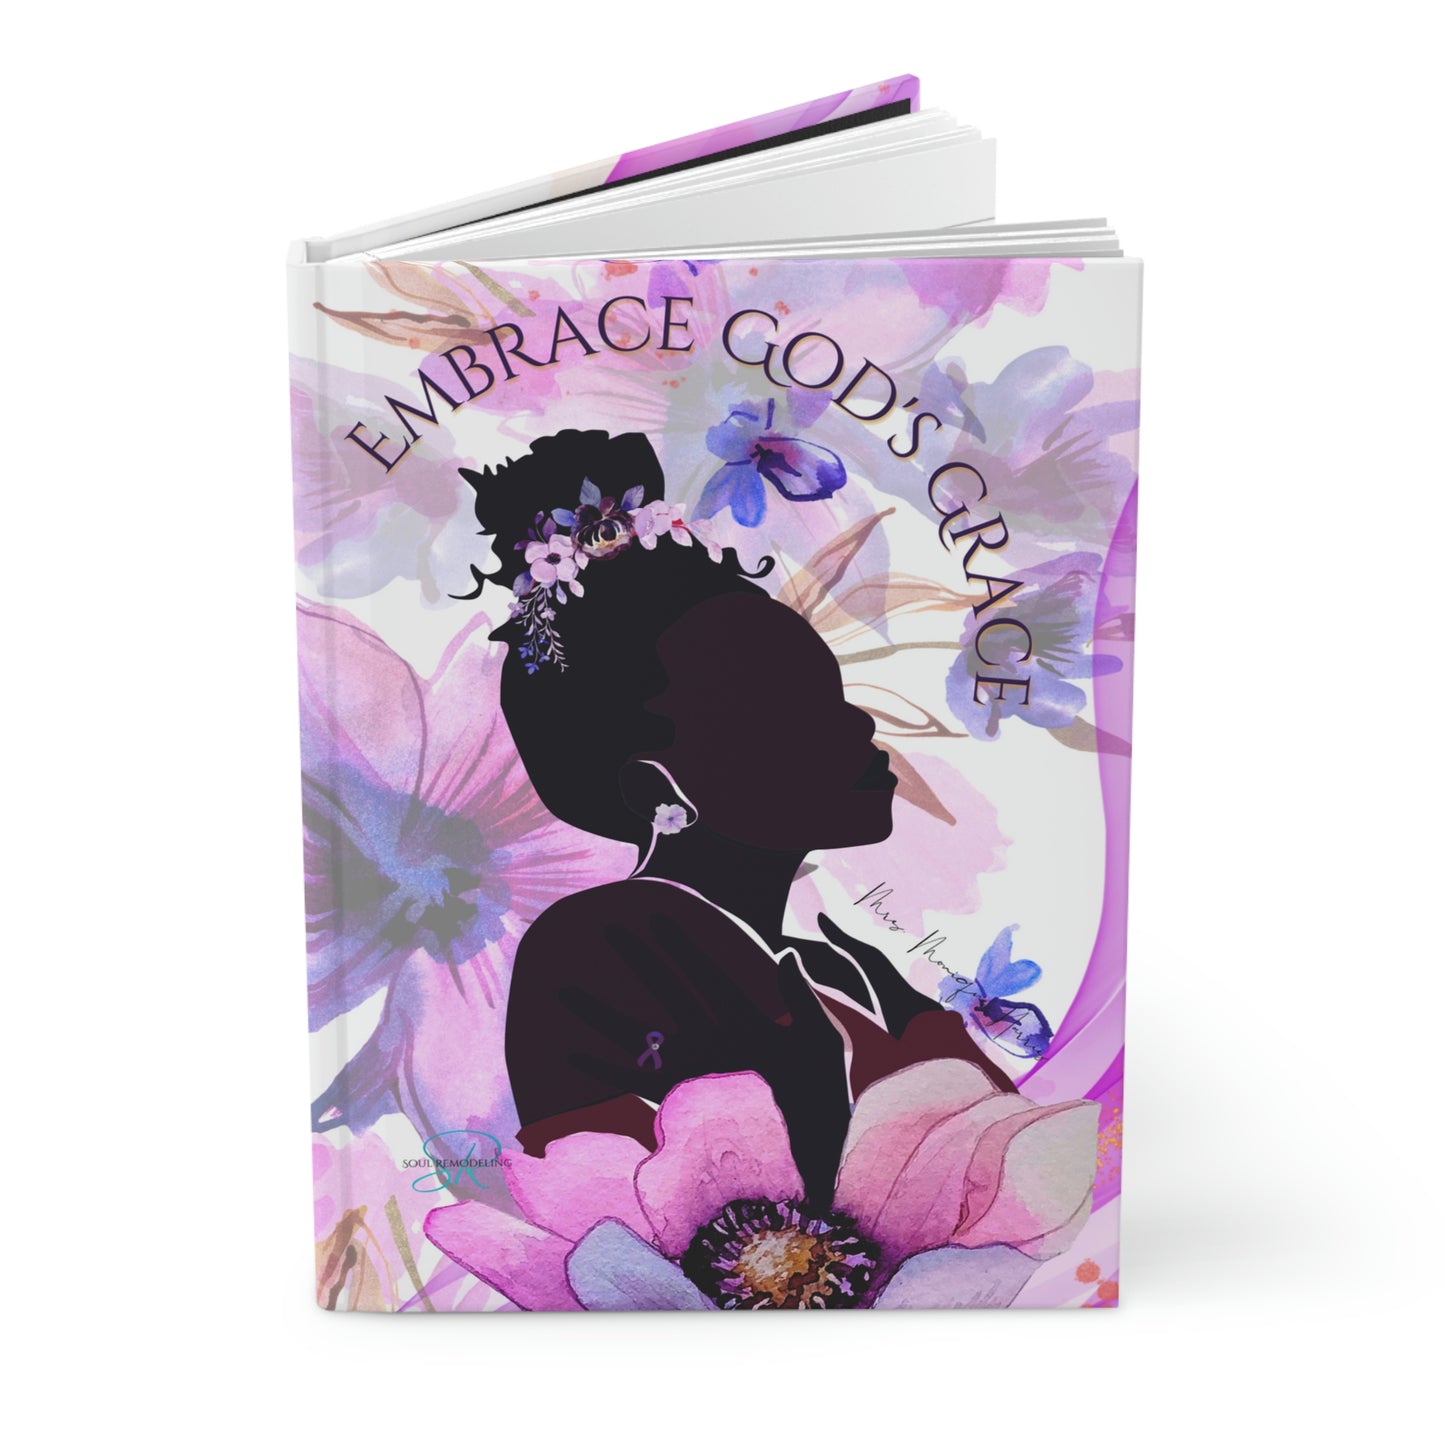 "Embrace God's Grace" Journal